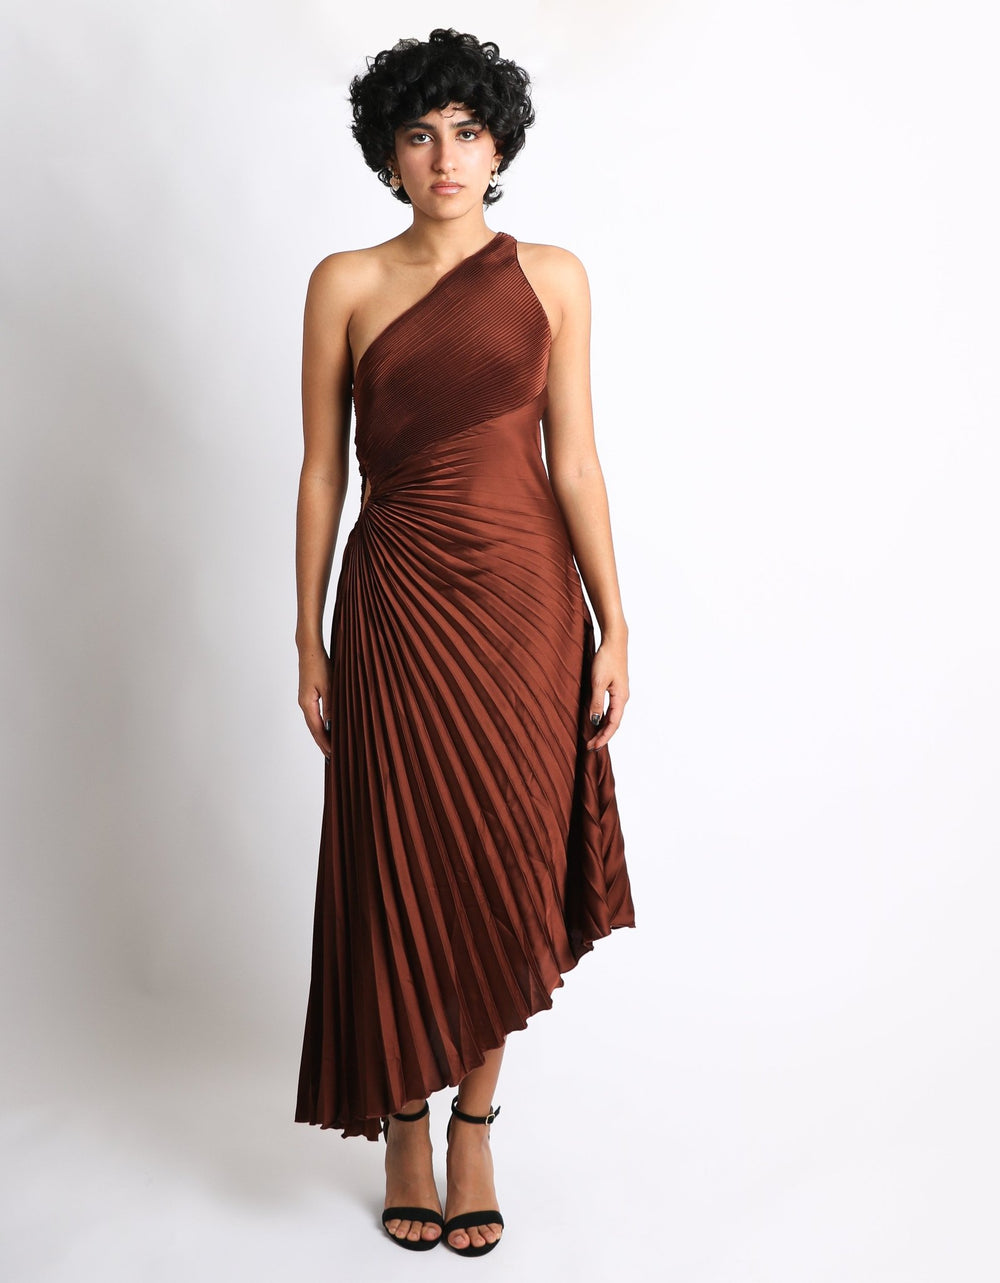 Leia - mocha - Lend the Trend renta de vestidos mexico